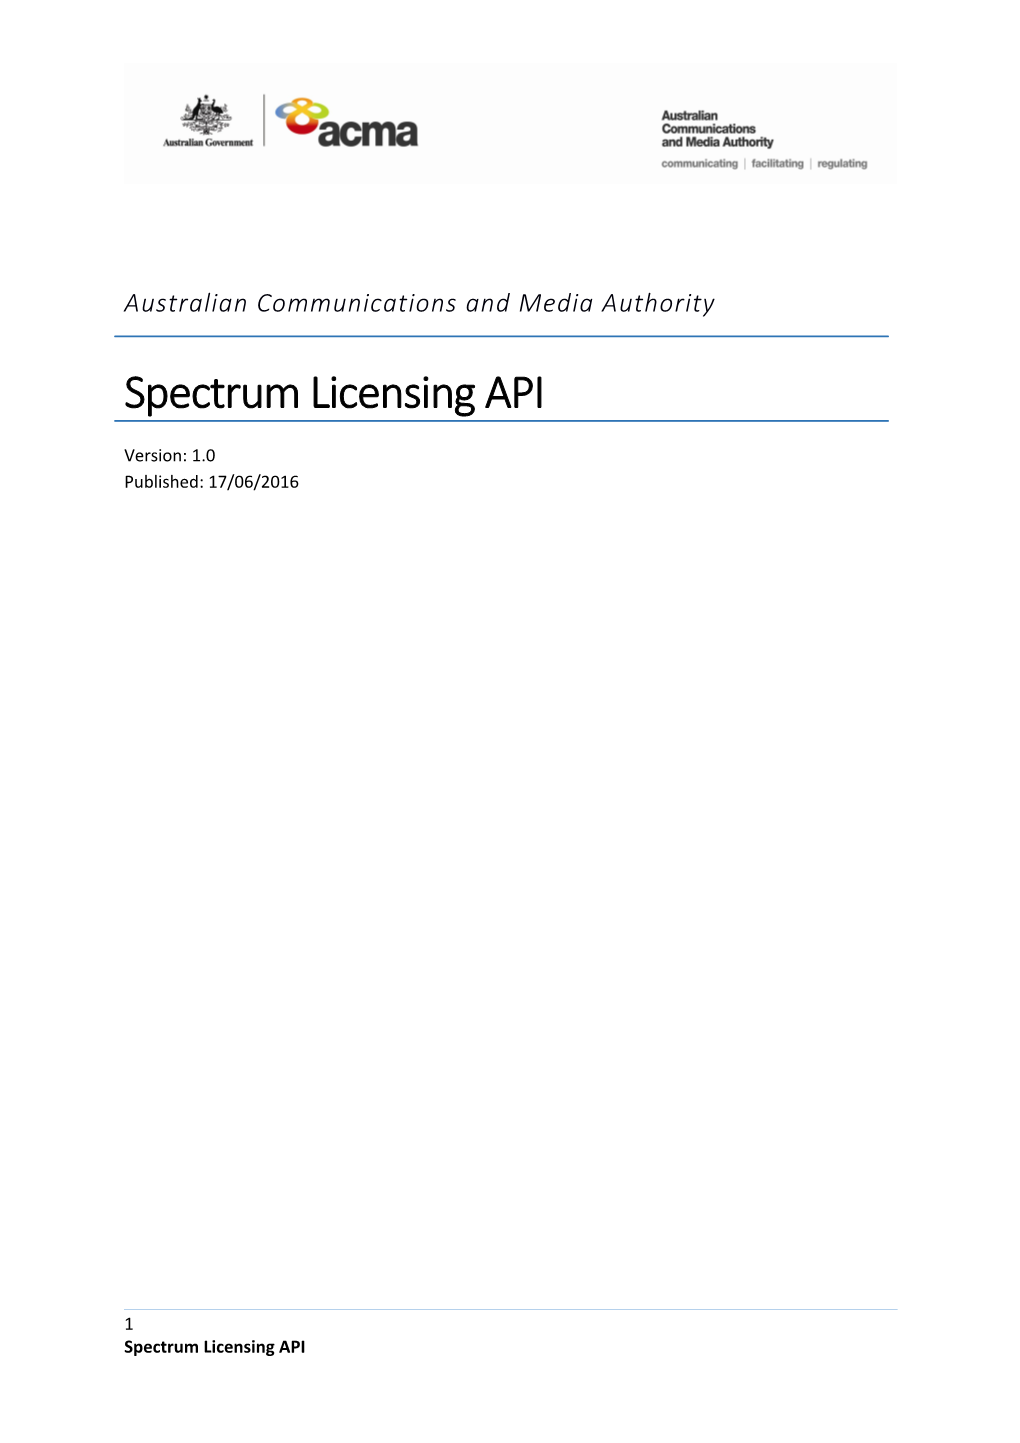 Spectrum Licensing API